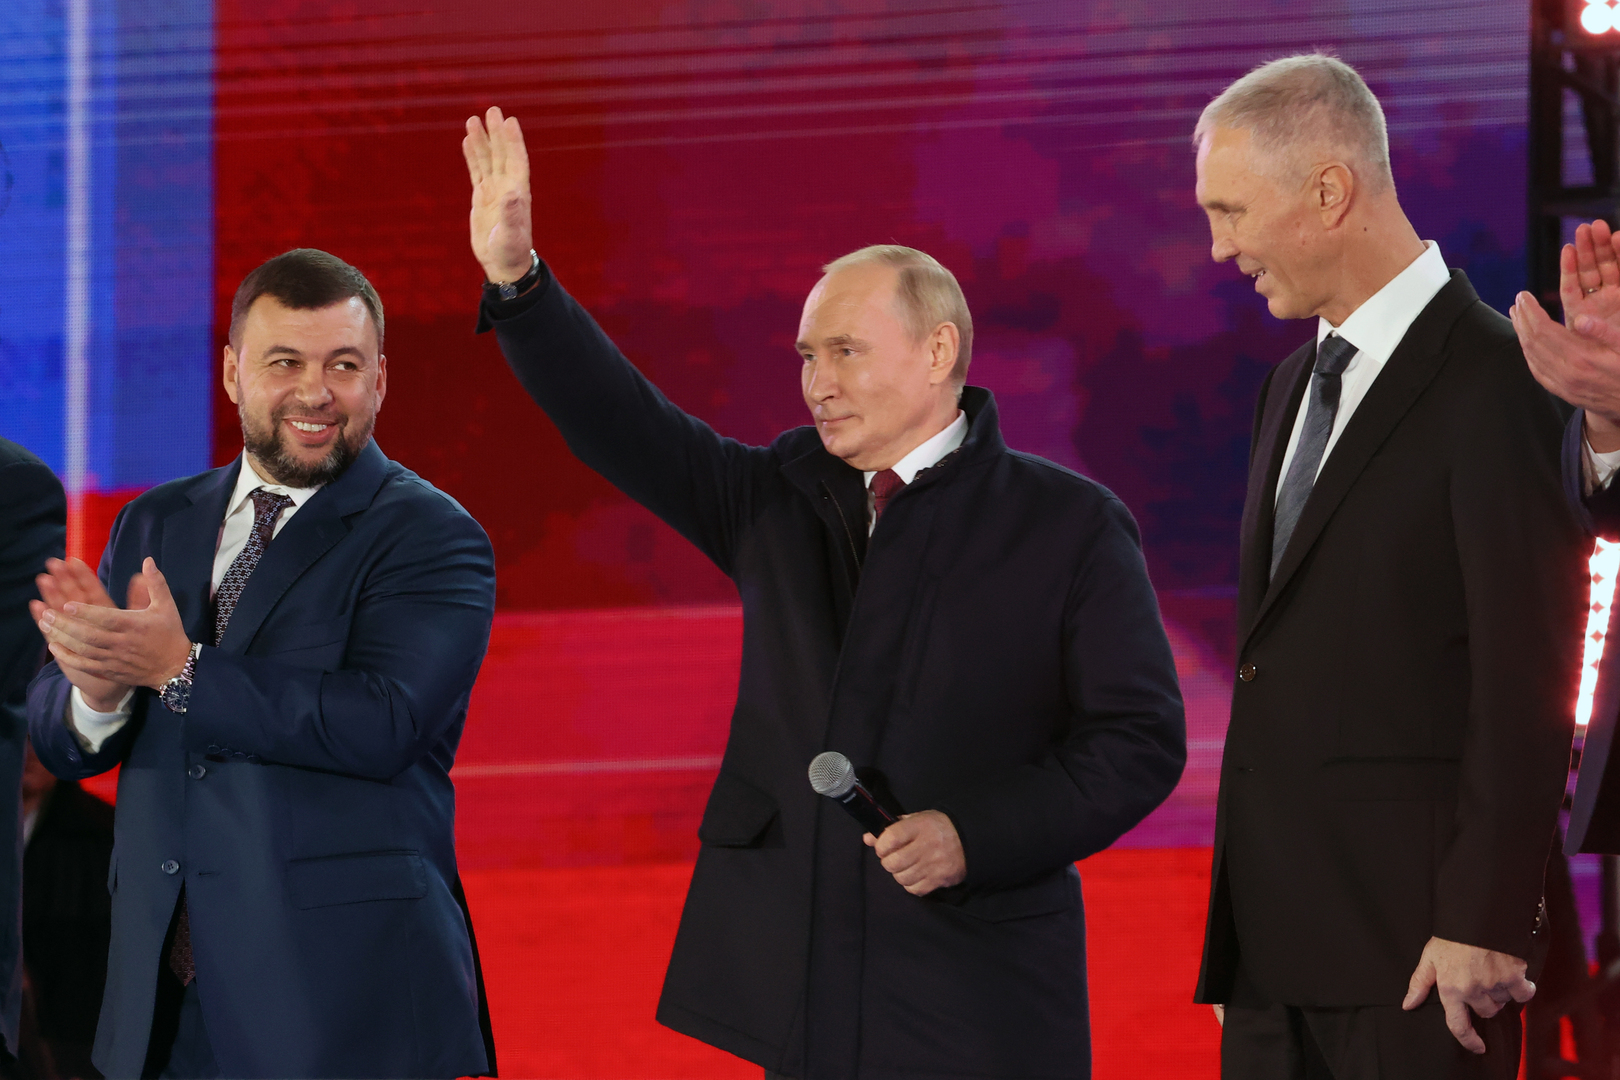 النص الكامل لخطاب فلاديمير بوتين بمناسبة انضمام دونيتسك ولوغانسك وزابوروجيه وخيرسون إلى روسيا